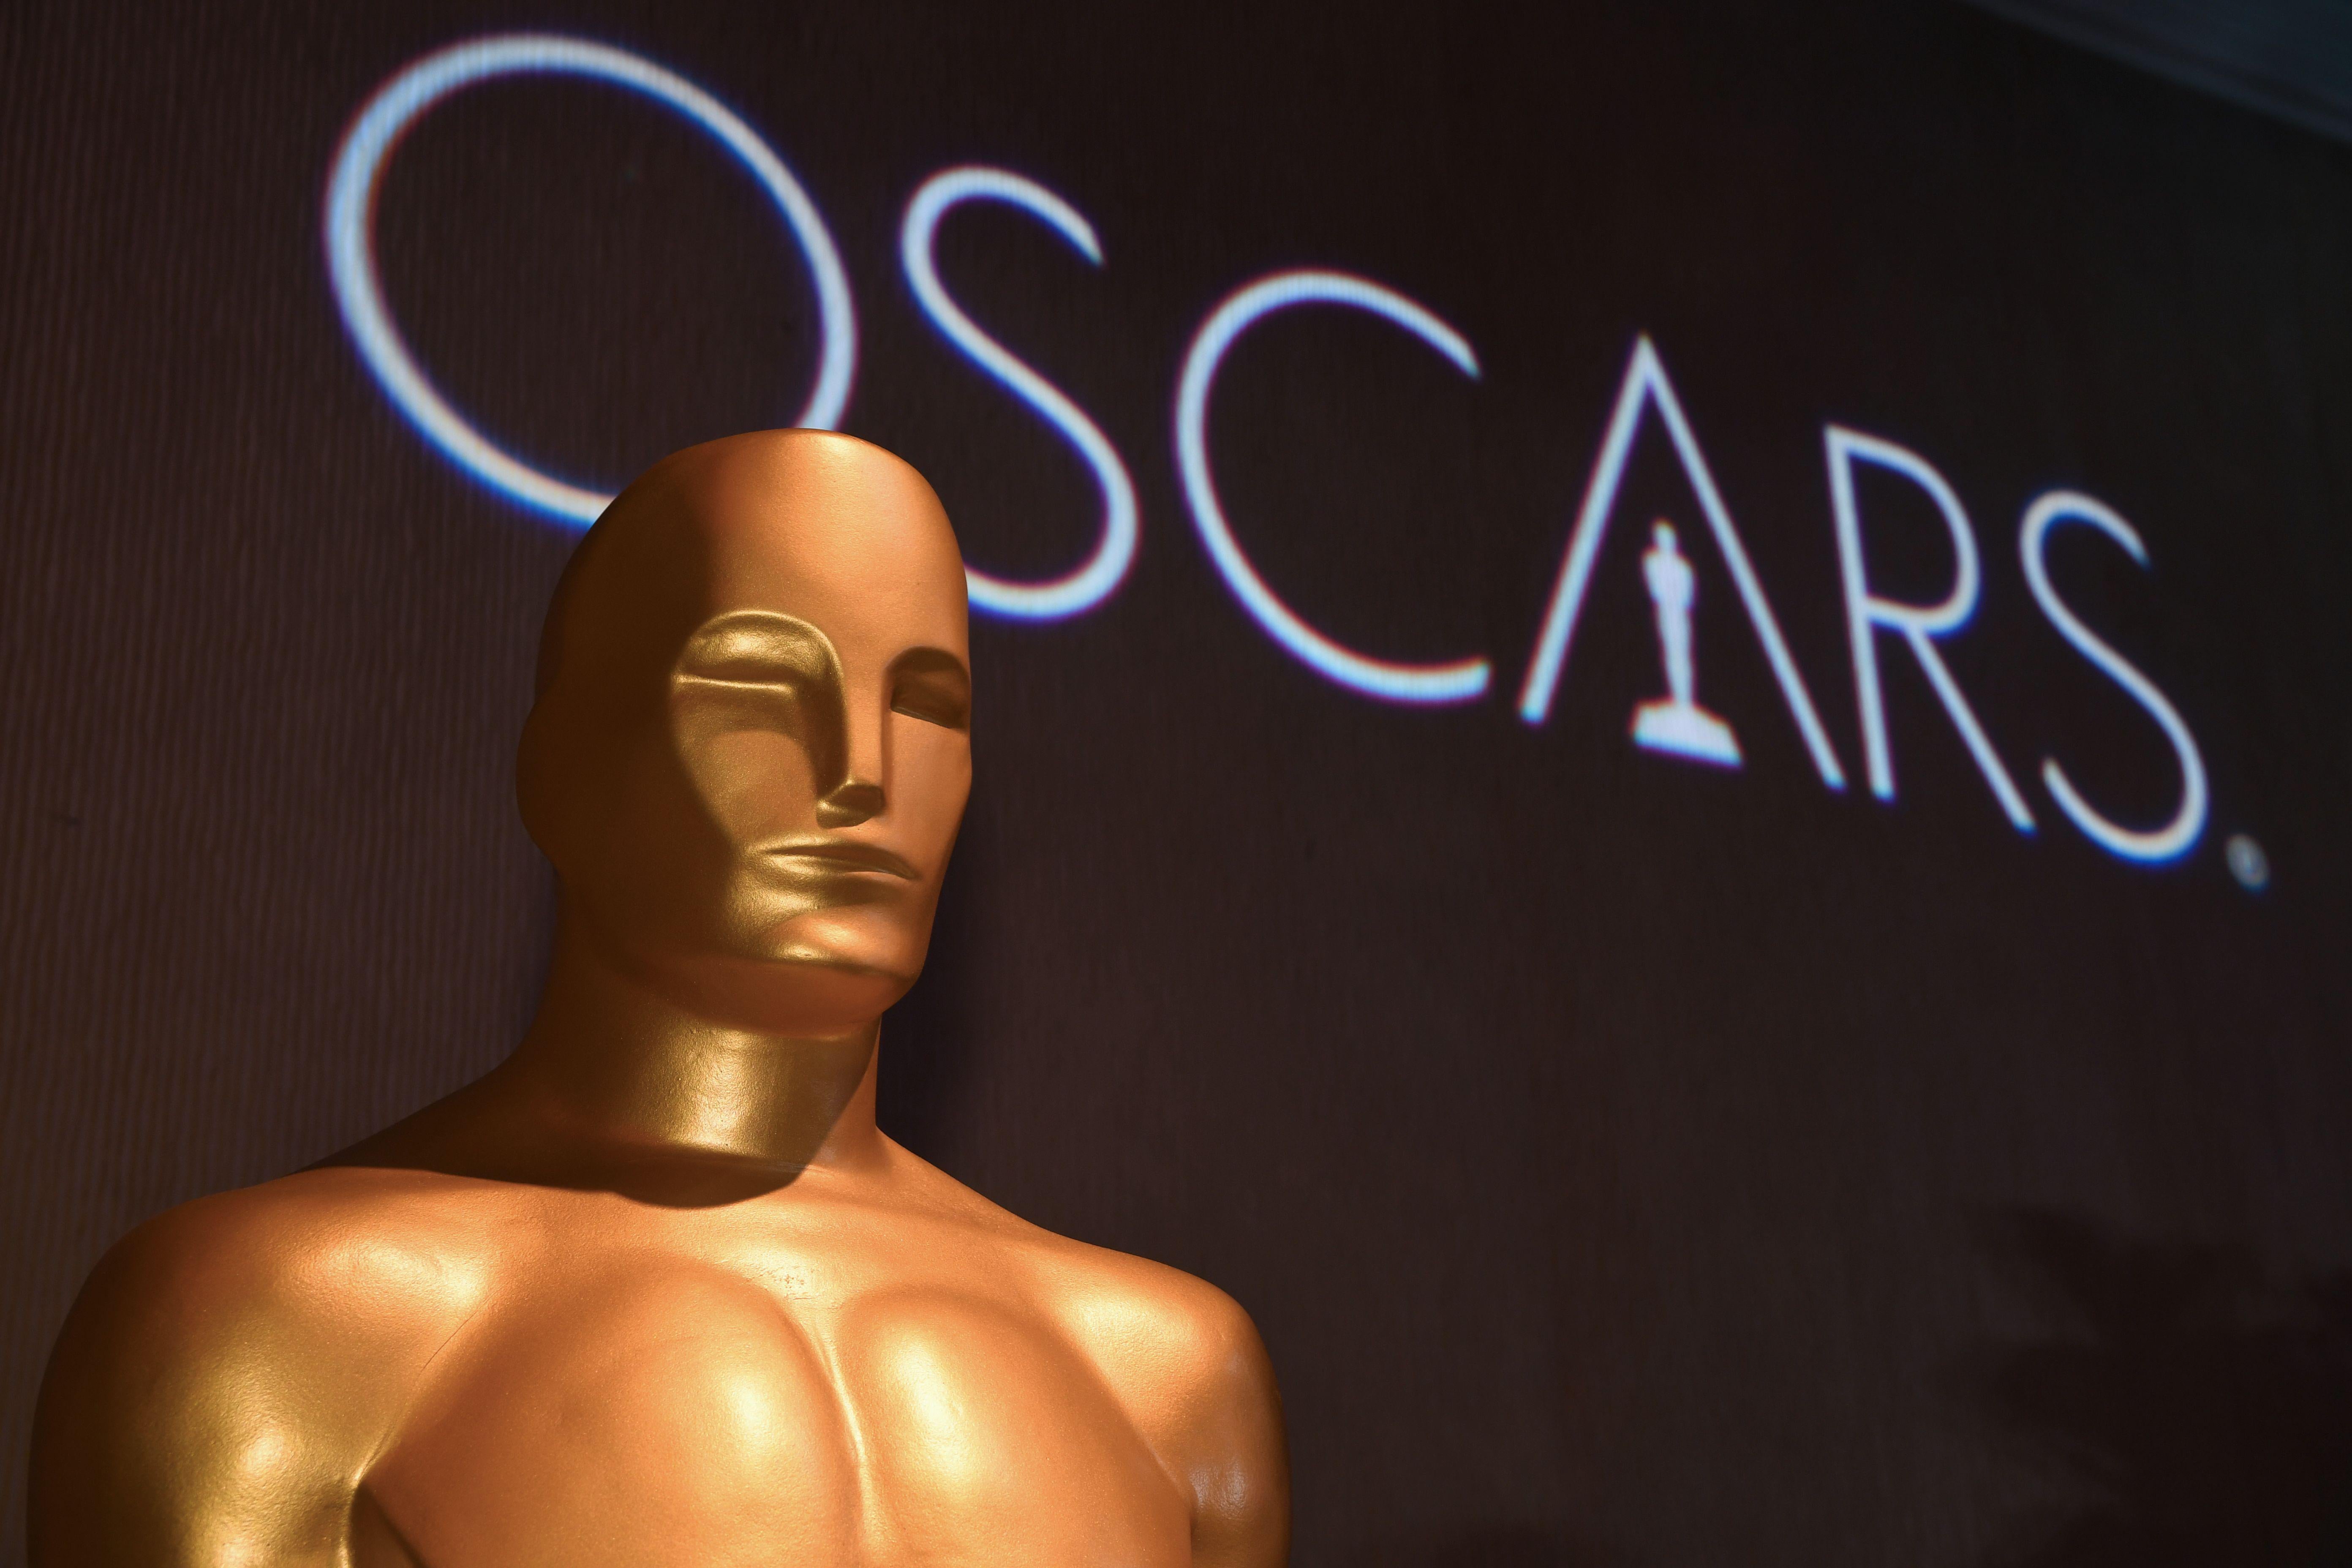 An Oscar Statue at the Academy Awards luncheon.